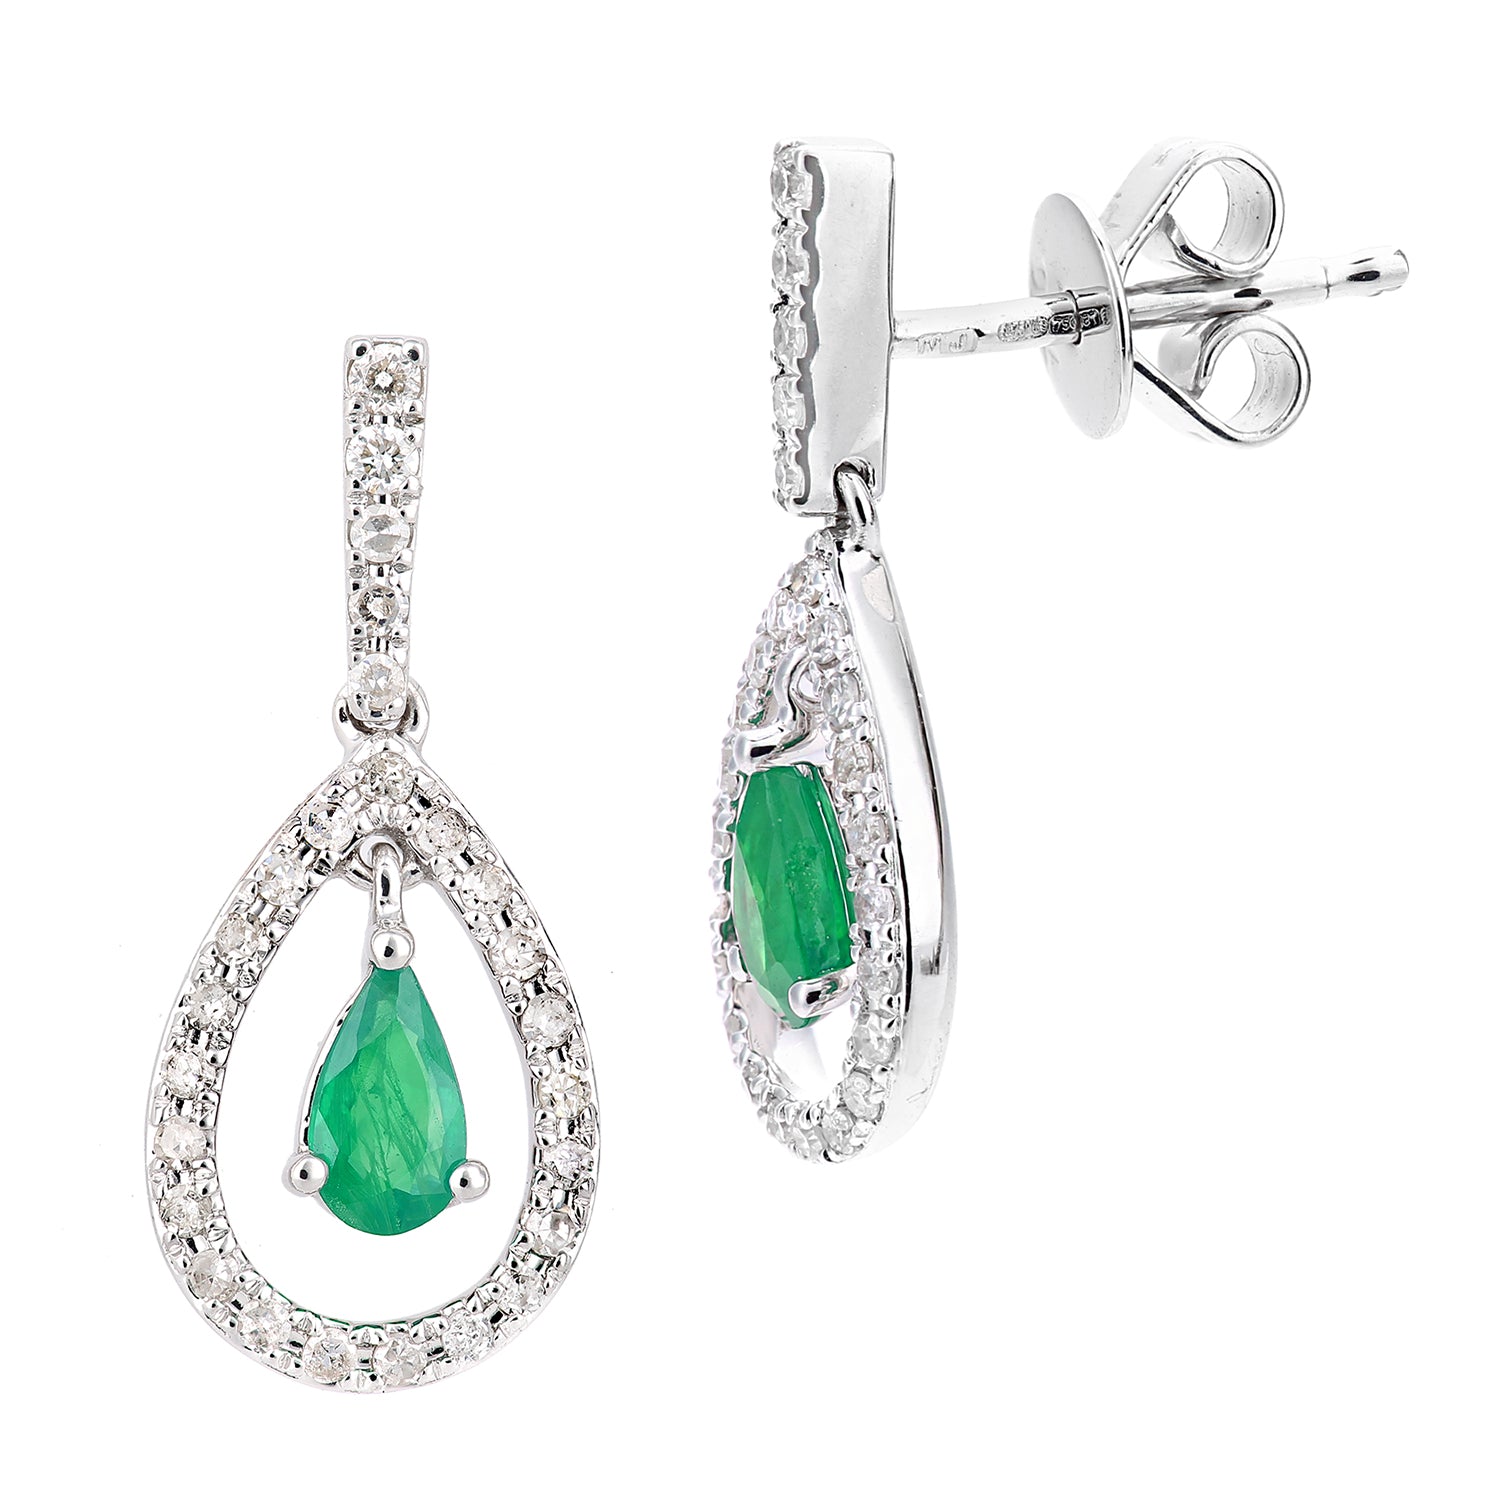 18ct White Gold  Diamond Pear Emerald Teardrop Drop Earrings - DE1AXL608W18EM